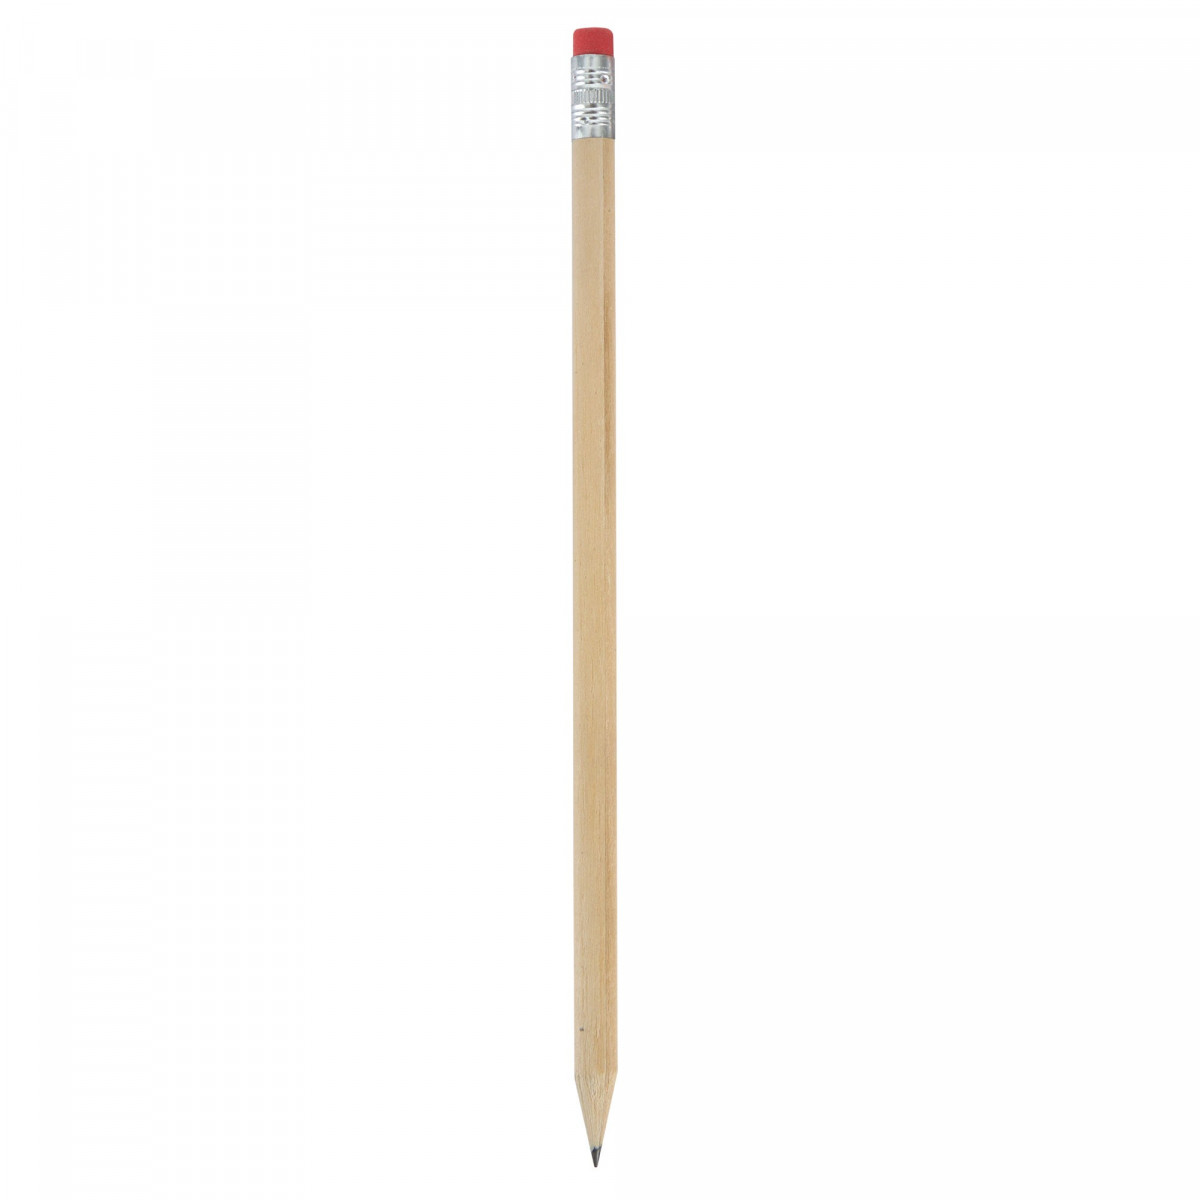 Crayon en bois avec gomme rouge